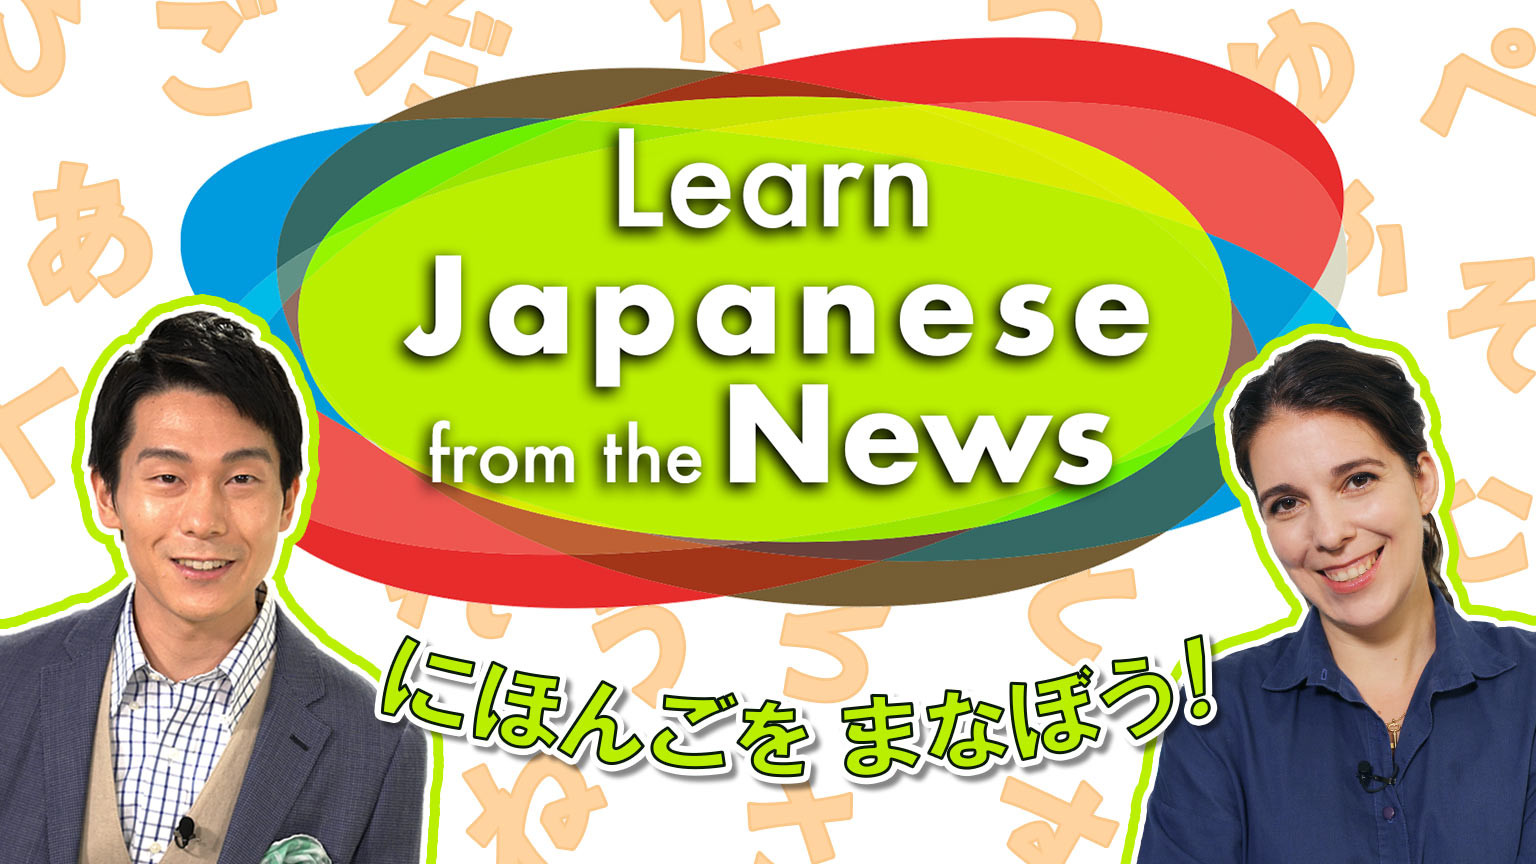 看新聞學日語
Learn Japanese from the News